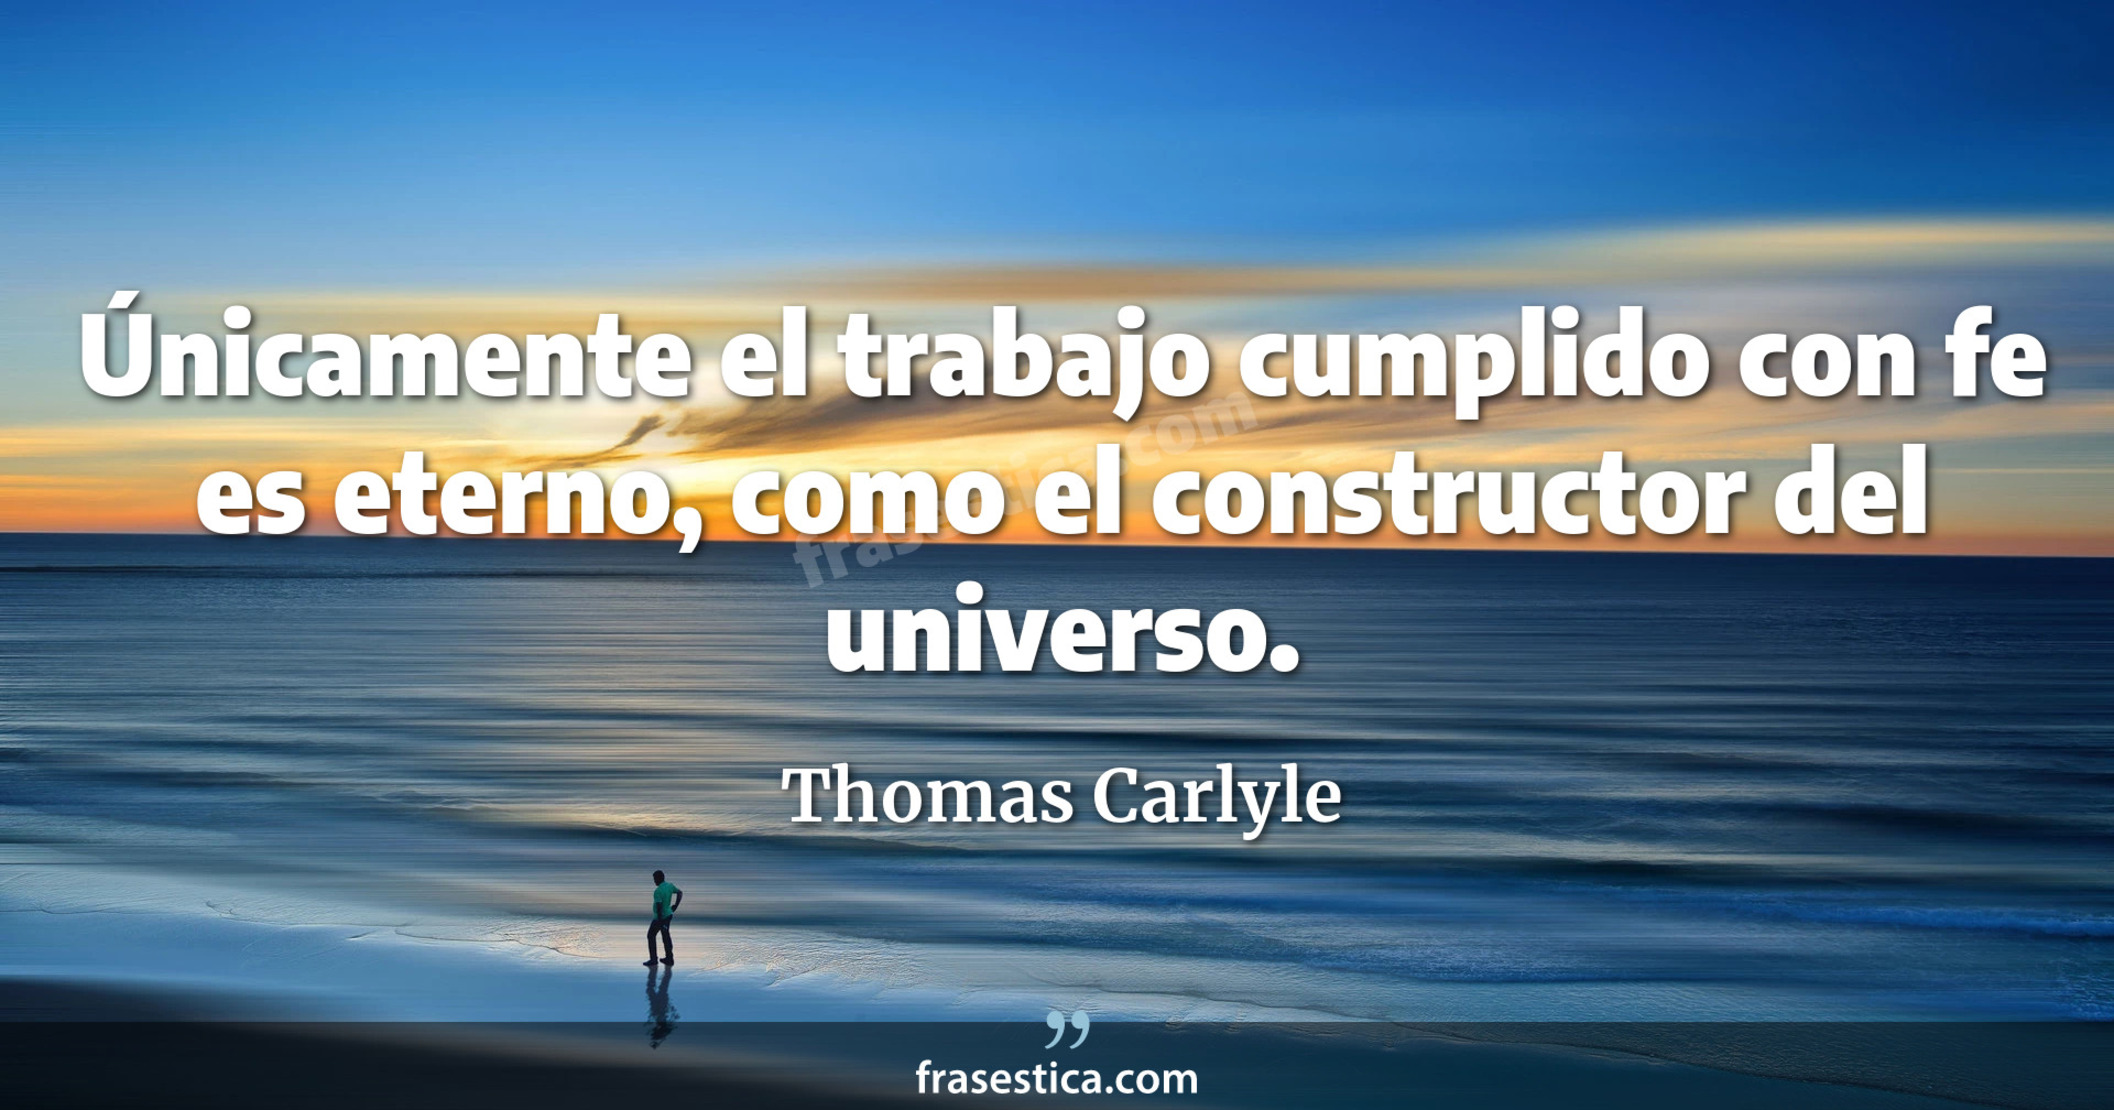 Únicamente el trabajo cumplido con fe es eterno, como el constructor del universo. - Thomas Carlyle